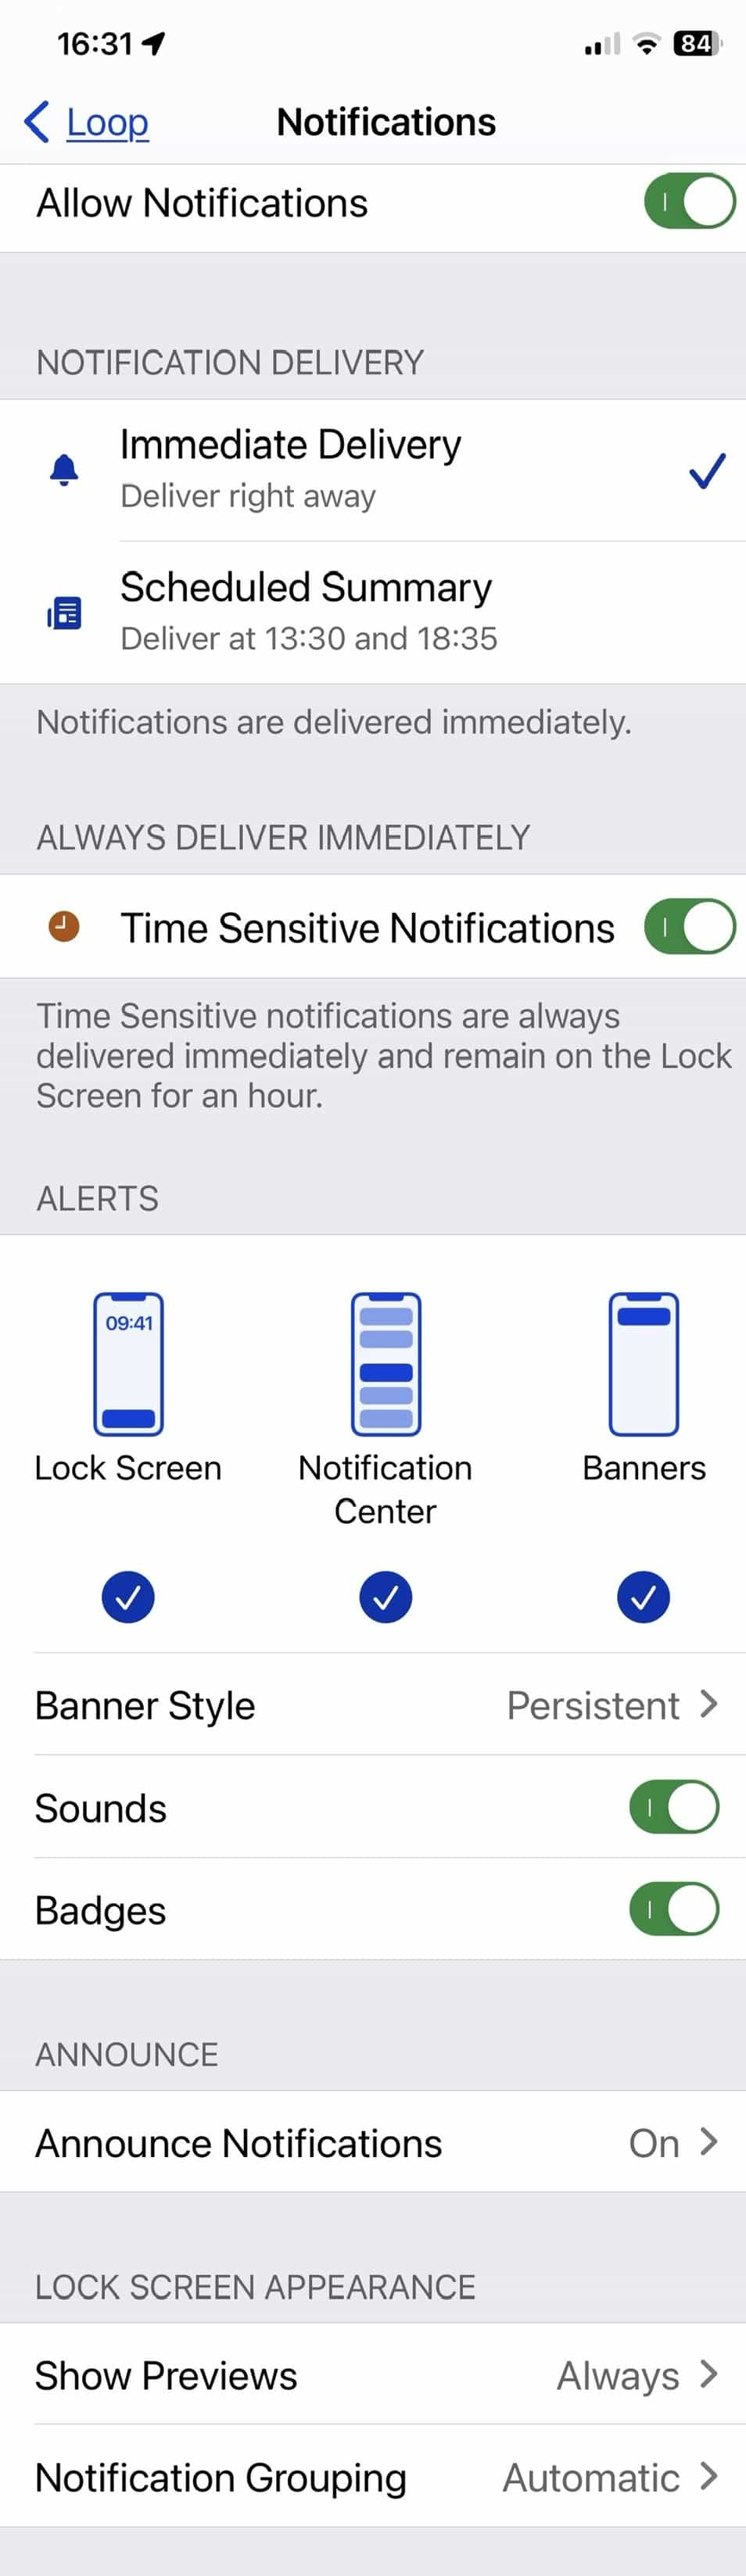 Loop 3 iPhone Notifications Settings